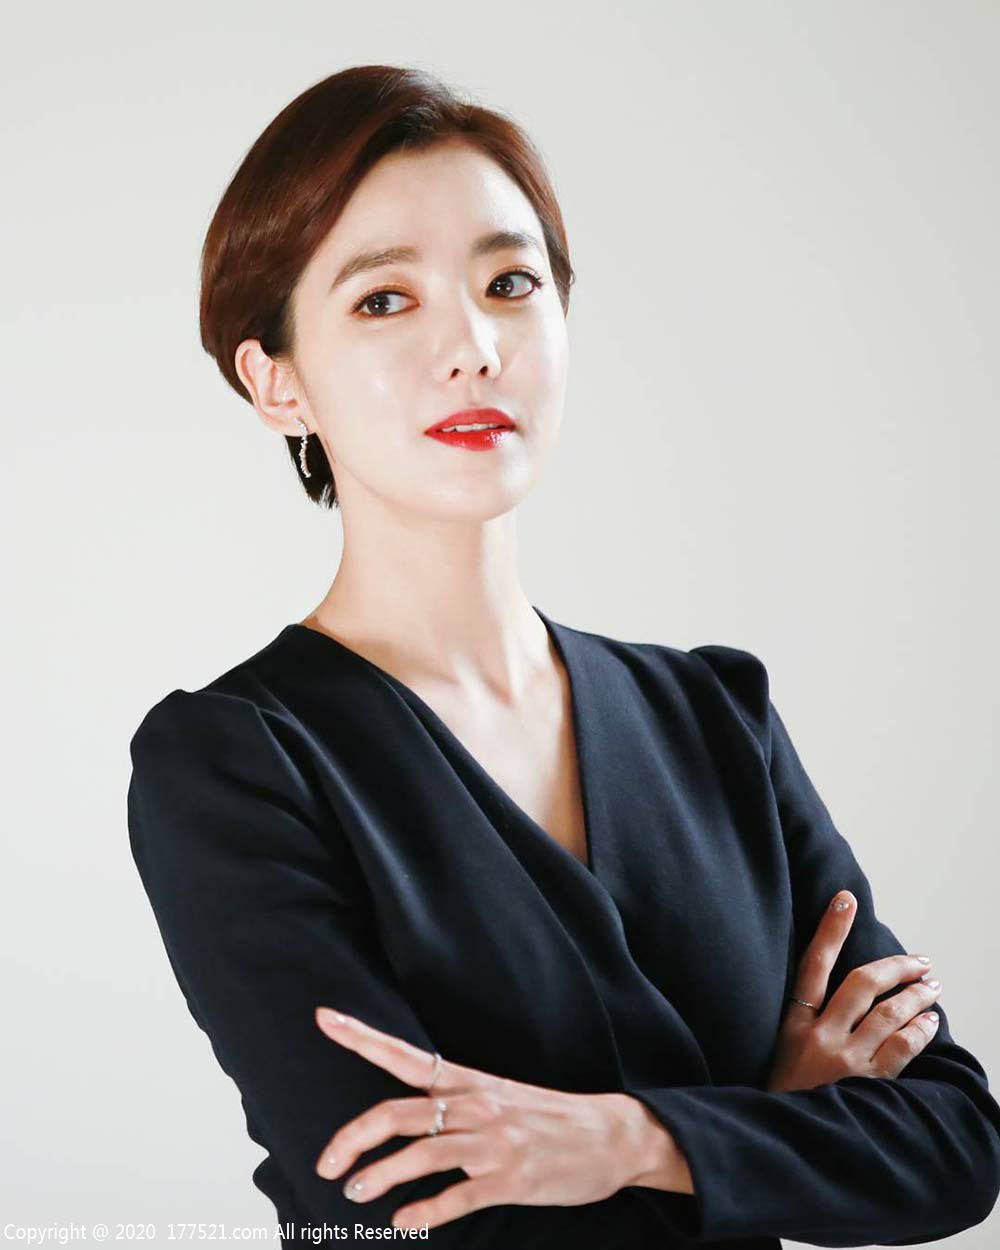 李素妍( 이소연, Lee So Yeon)人物生平生涯评价全纪录